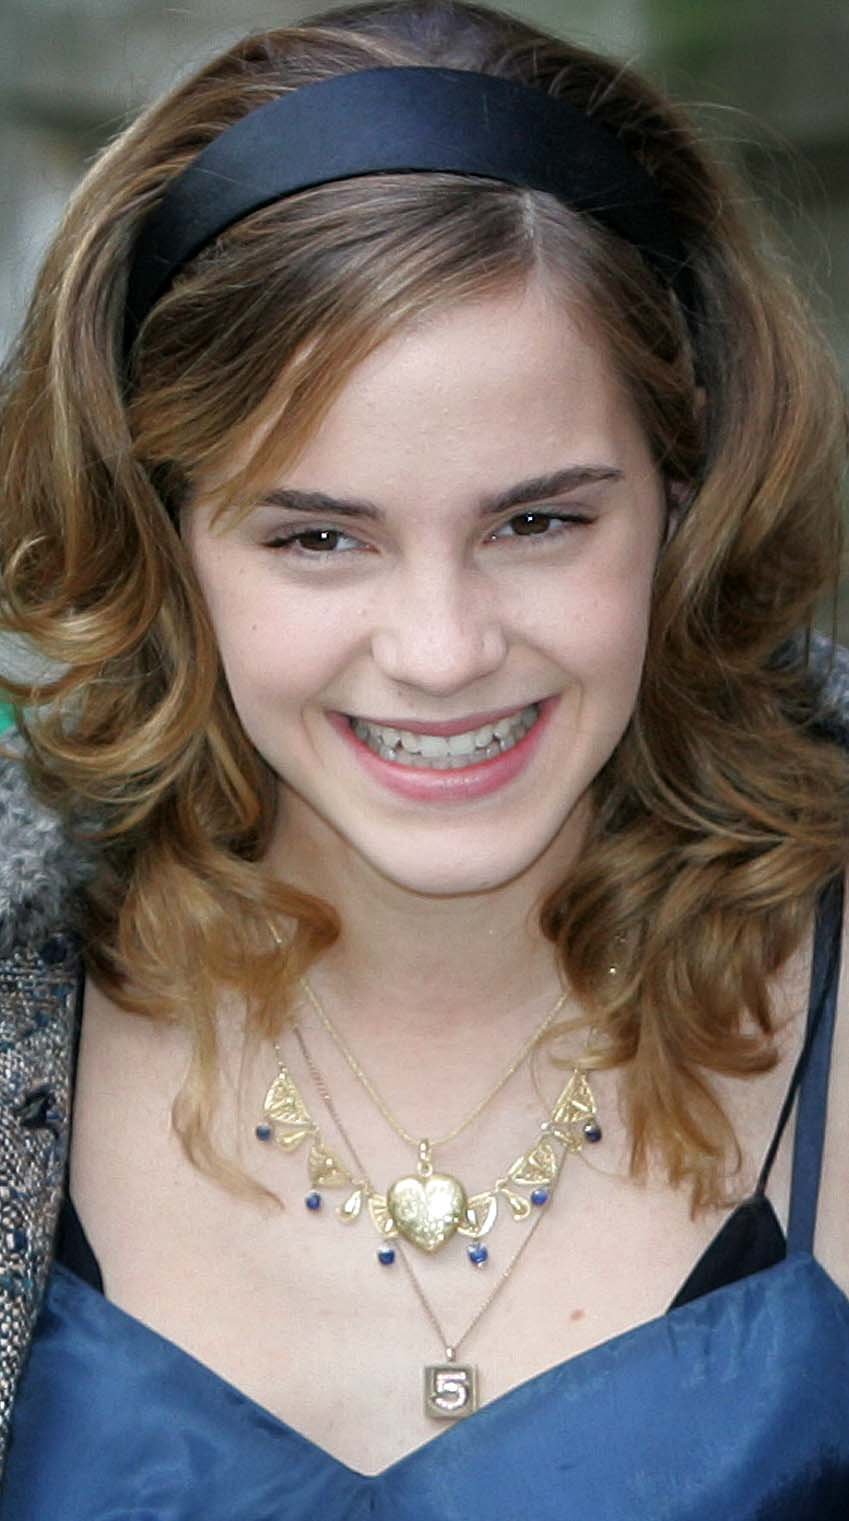 Anscheinend war es Emma "schön" Aber "anspruchsvoll" – auch als sie in ihrem Trailer nach Highlights fragte